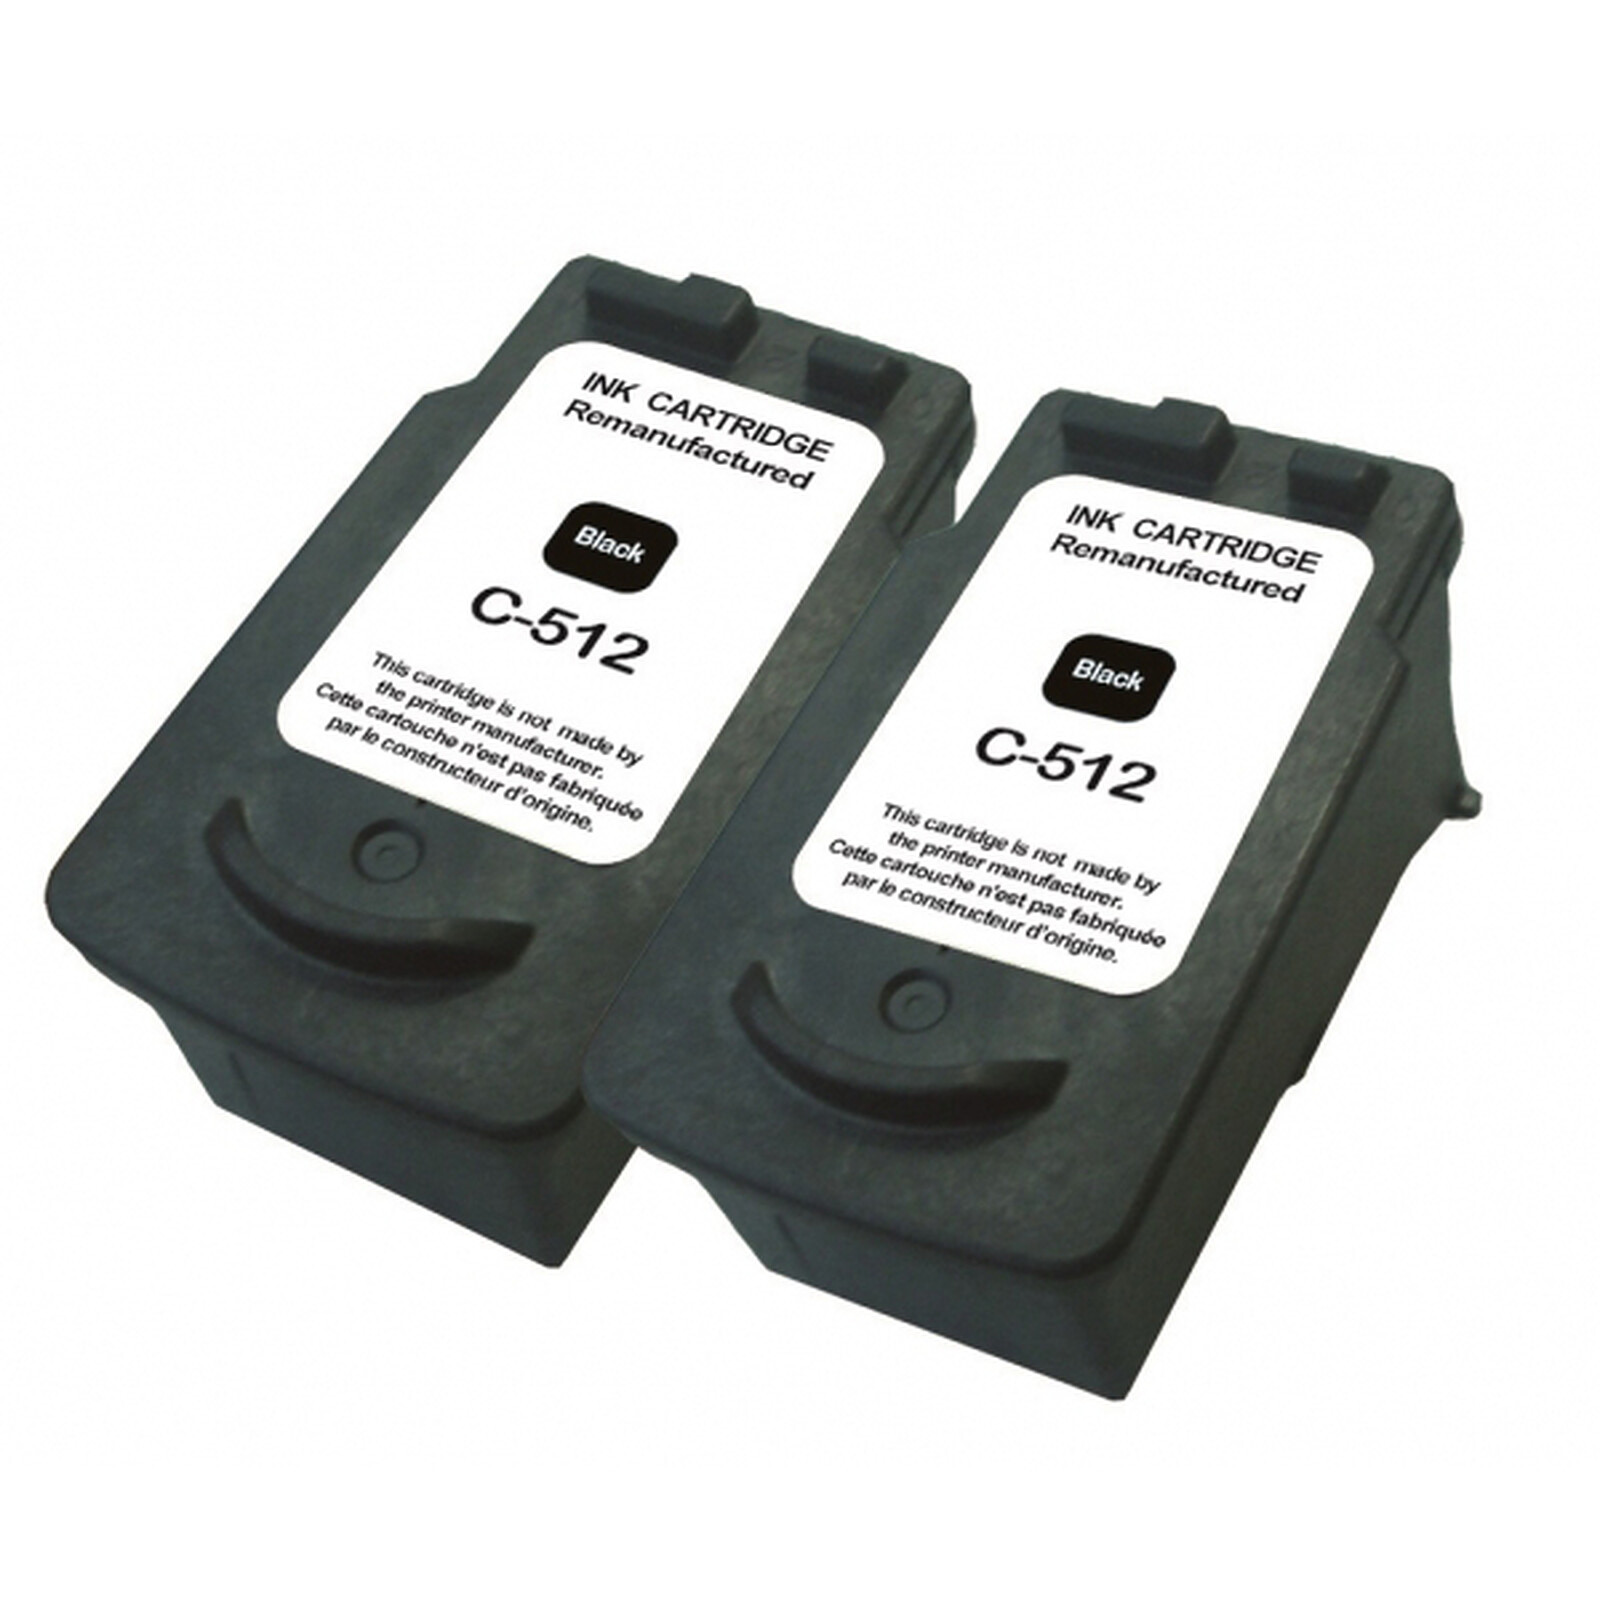 UPrint Cartouche compatible 302XL F6U68AE (Noir) - Cartouche imprimante -  LDLC